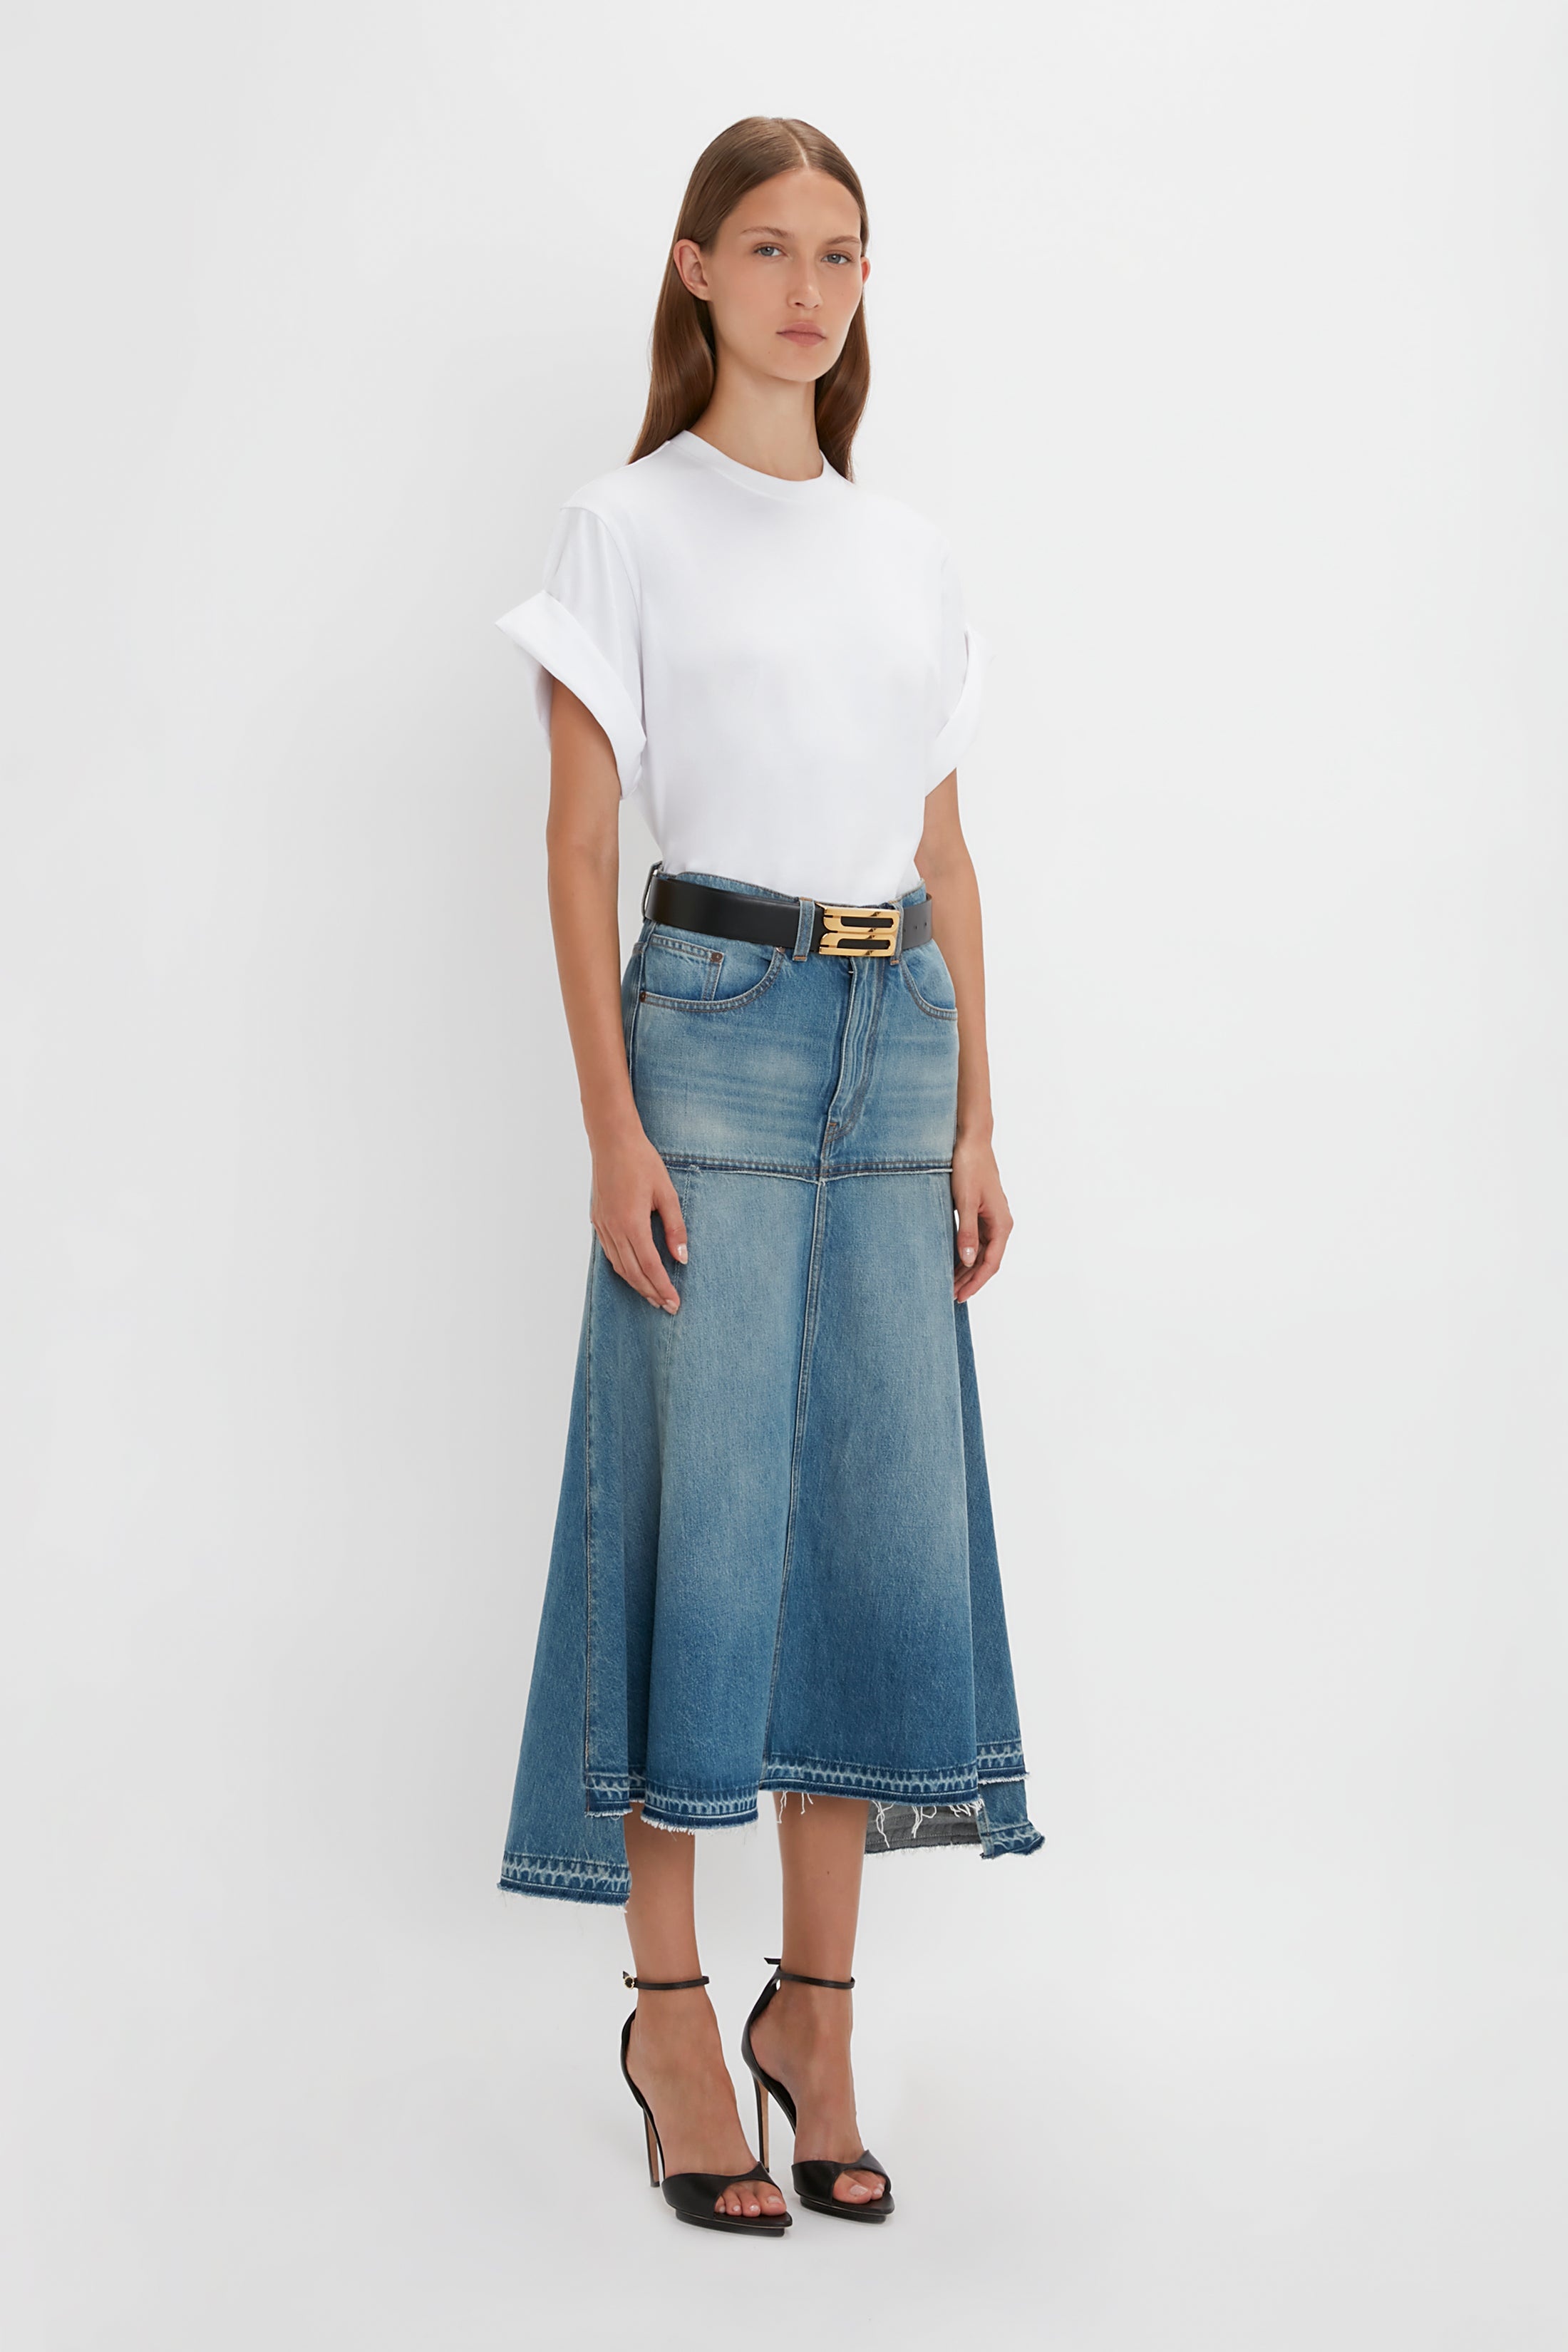 Patched Denim Skirt In Vintage Wash - 3